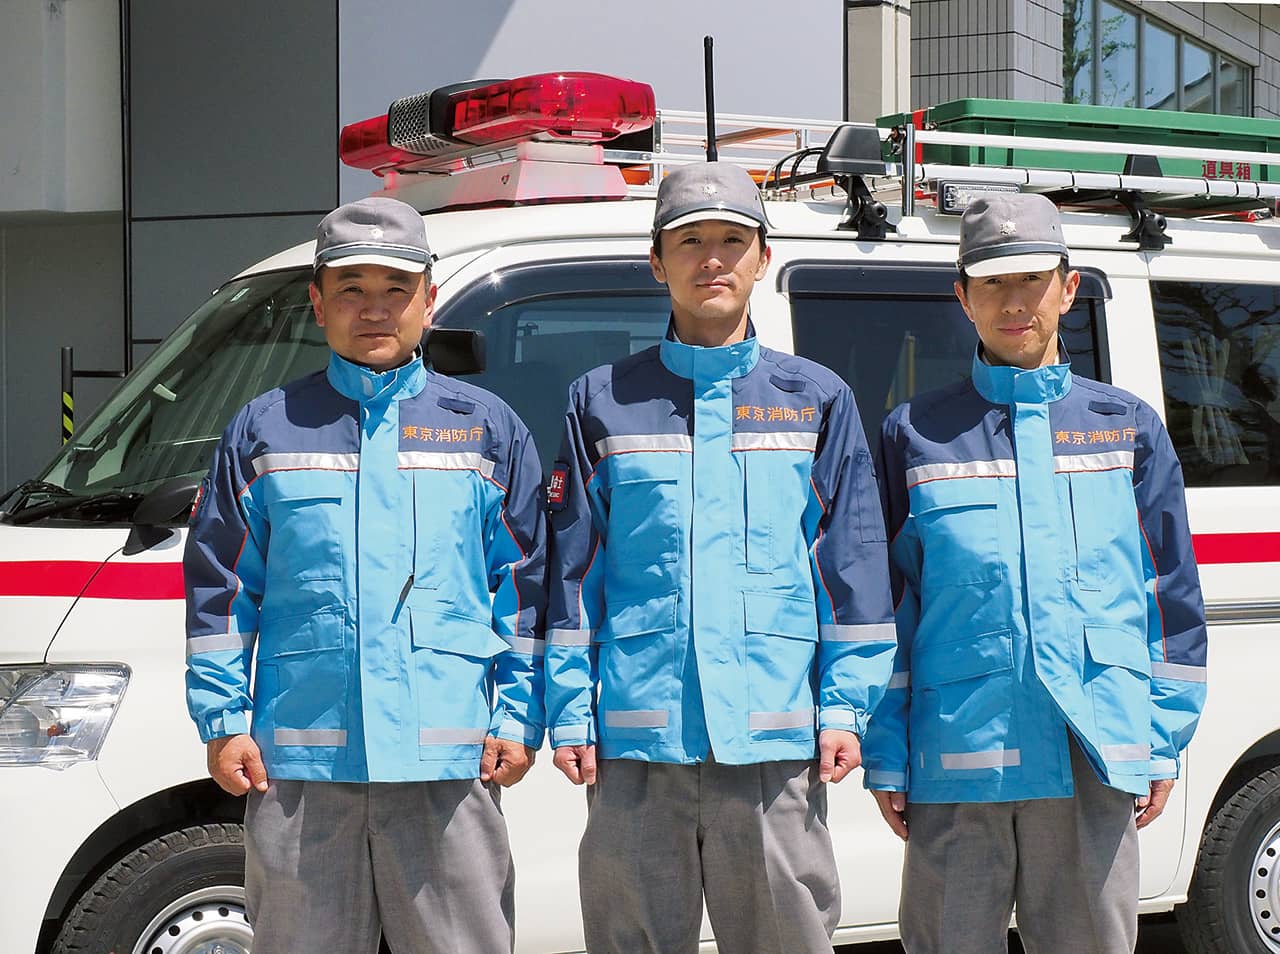 山岳対応用特殊救急車を運用する浅川特殊救急小隊の隊員